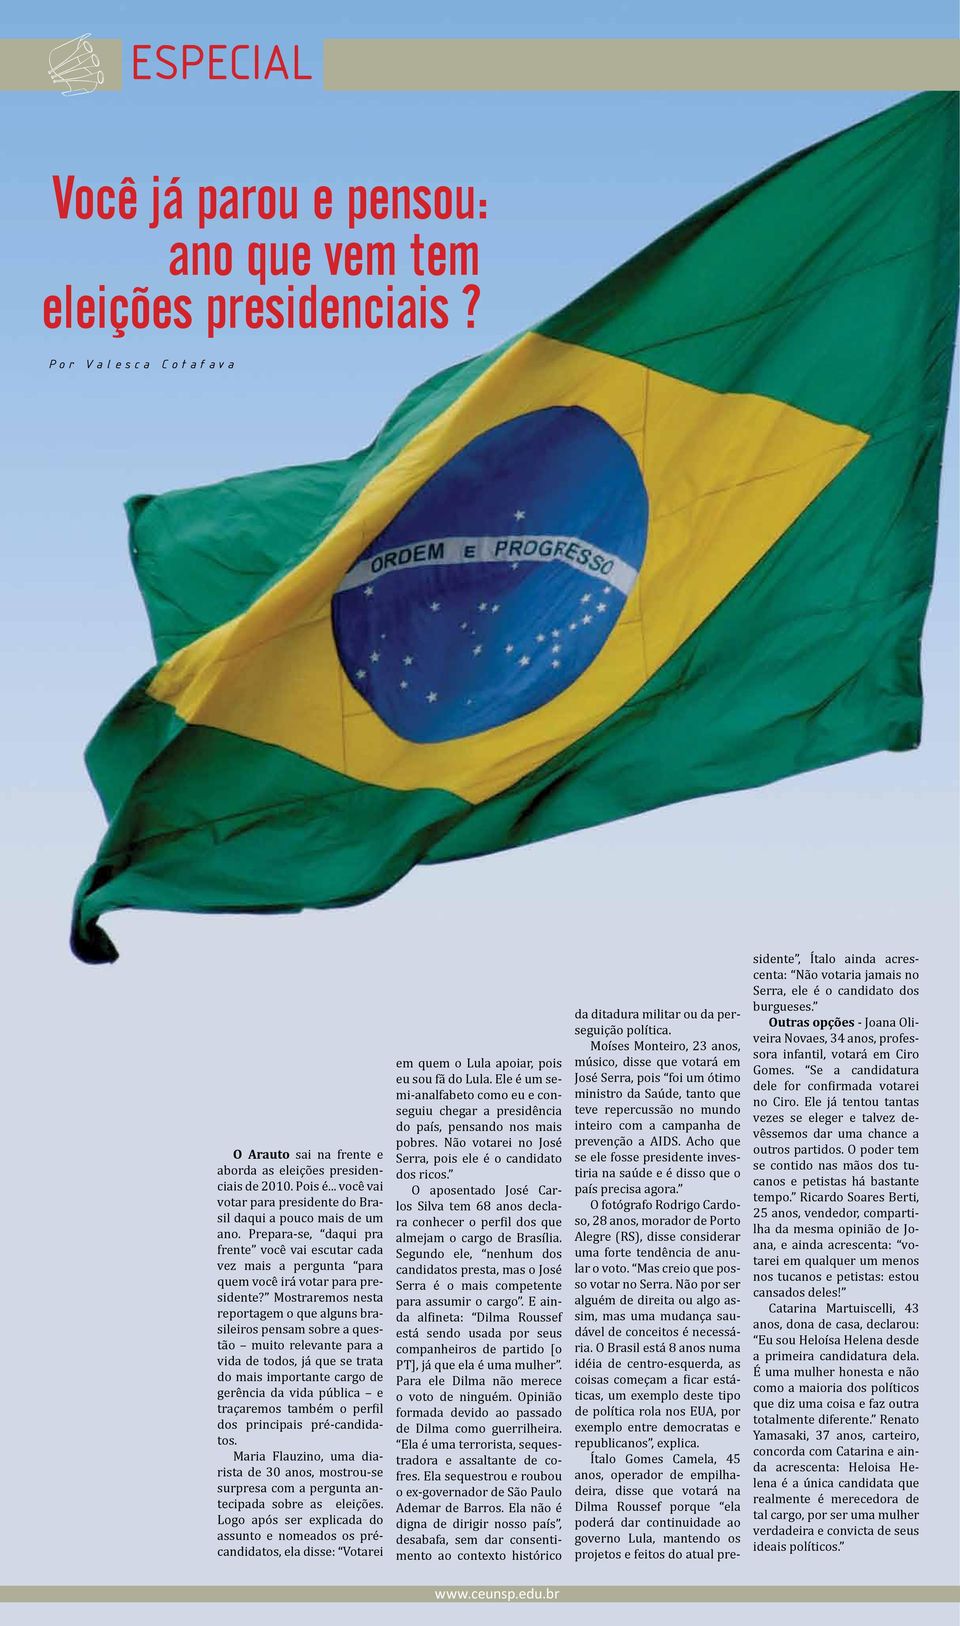 Mostraremos nesta reportagem o que alguns brasileiros pensam sobre a questão muito relevante para a vida de todos, já que se trata do mais importante cargo de gerência da vida pública e traçaremos